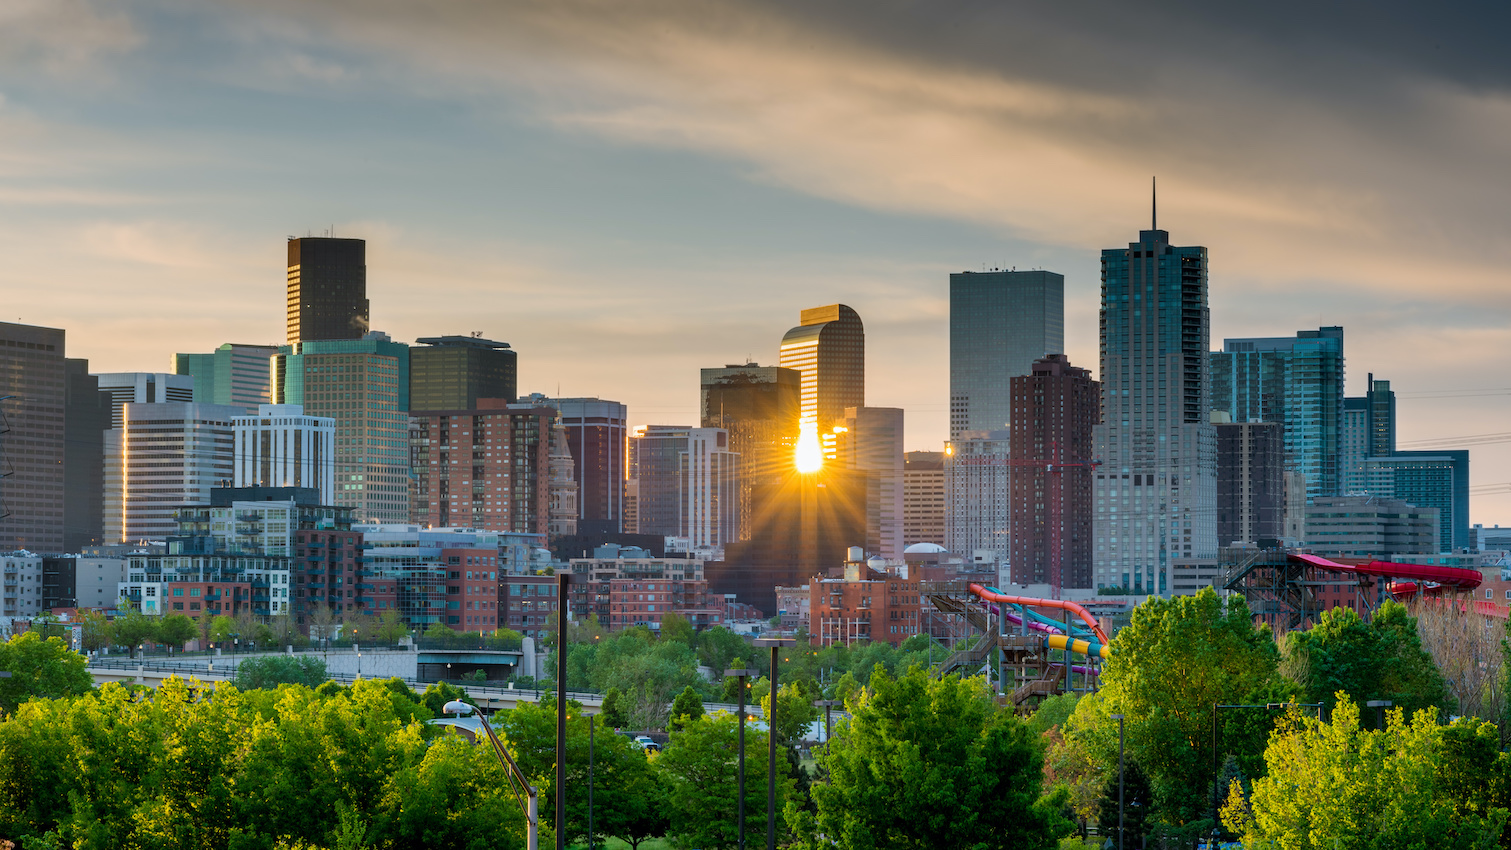 Sunset view of Denver, Colorado